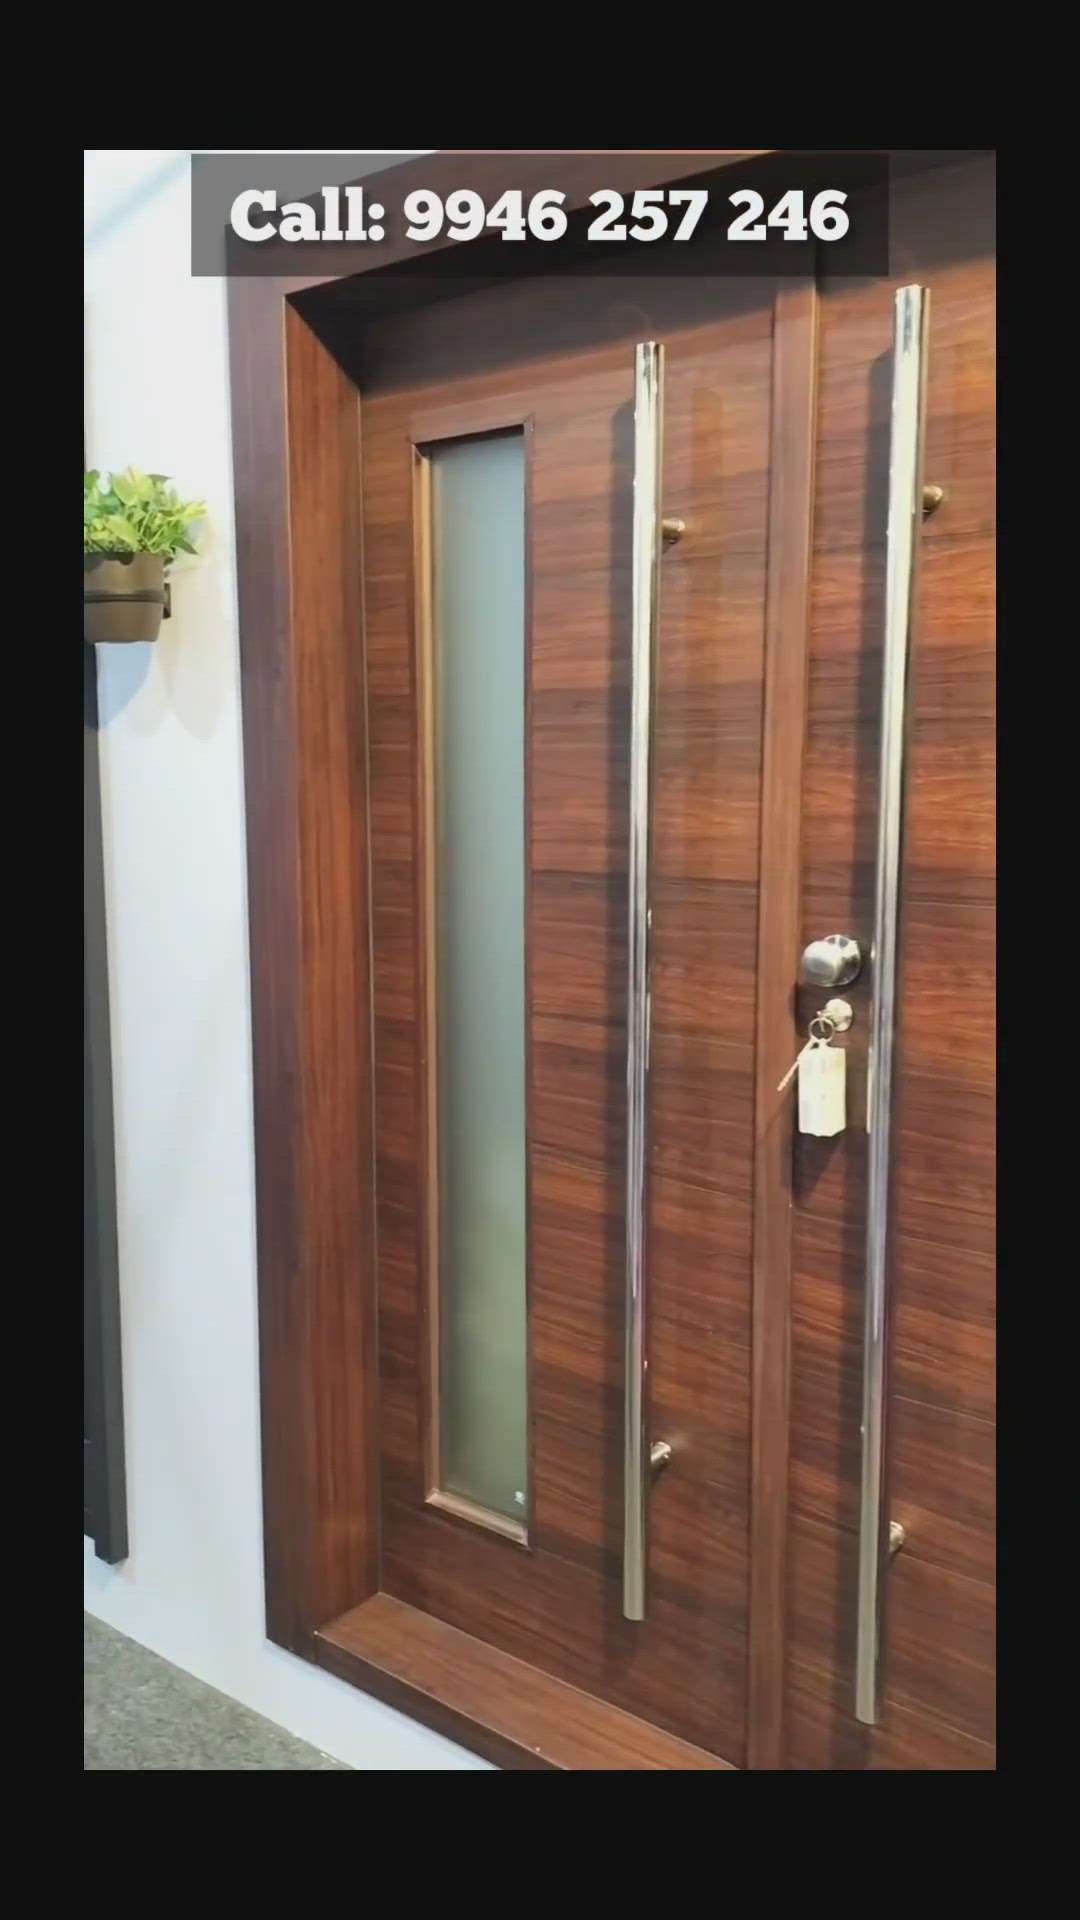 Steel Doors ✨️ | All Kerala Available 🔥 | 9946 257 246

#doors
#steeldoors
#FrontDoor